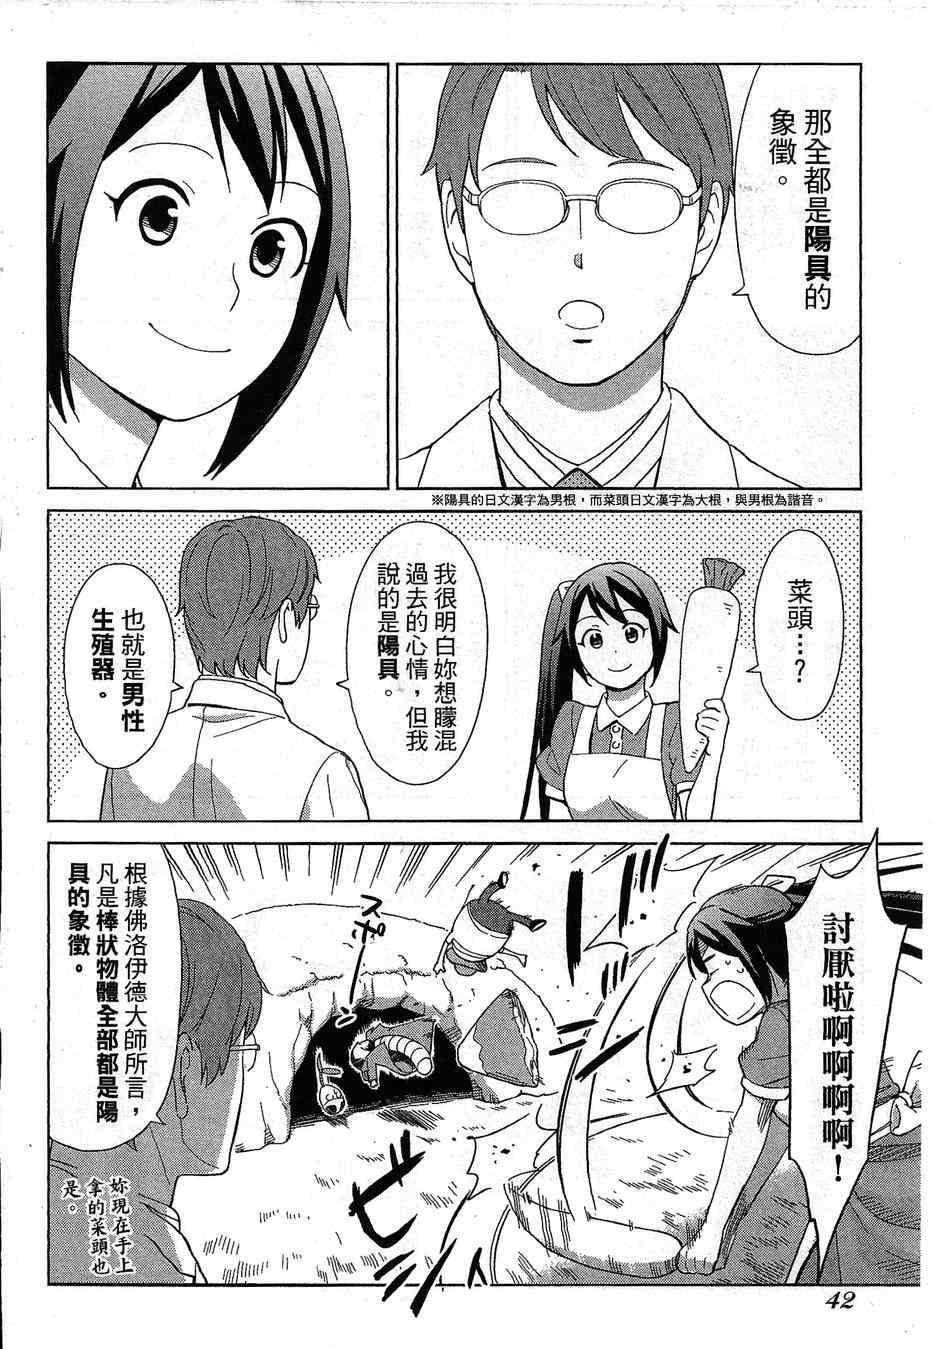 《漫画心疗系》漫画 064-065话